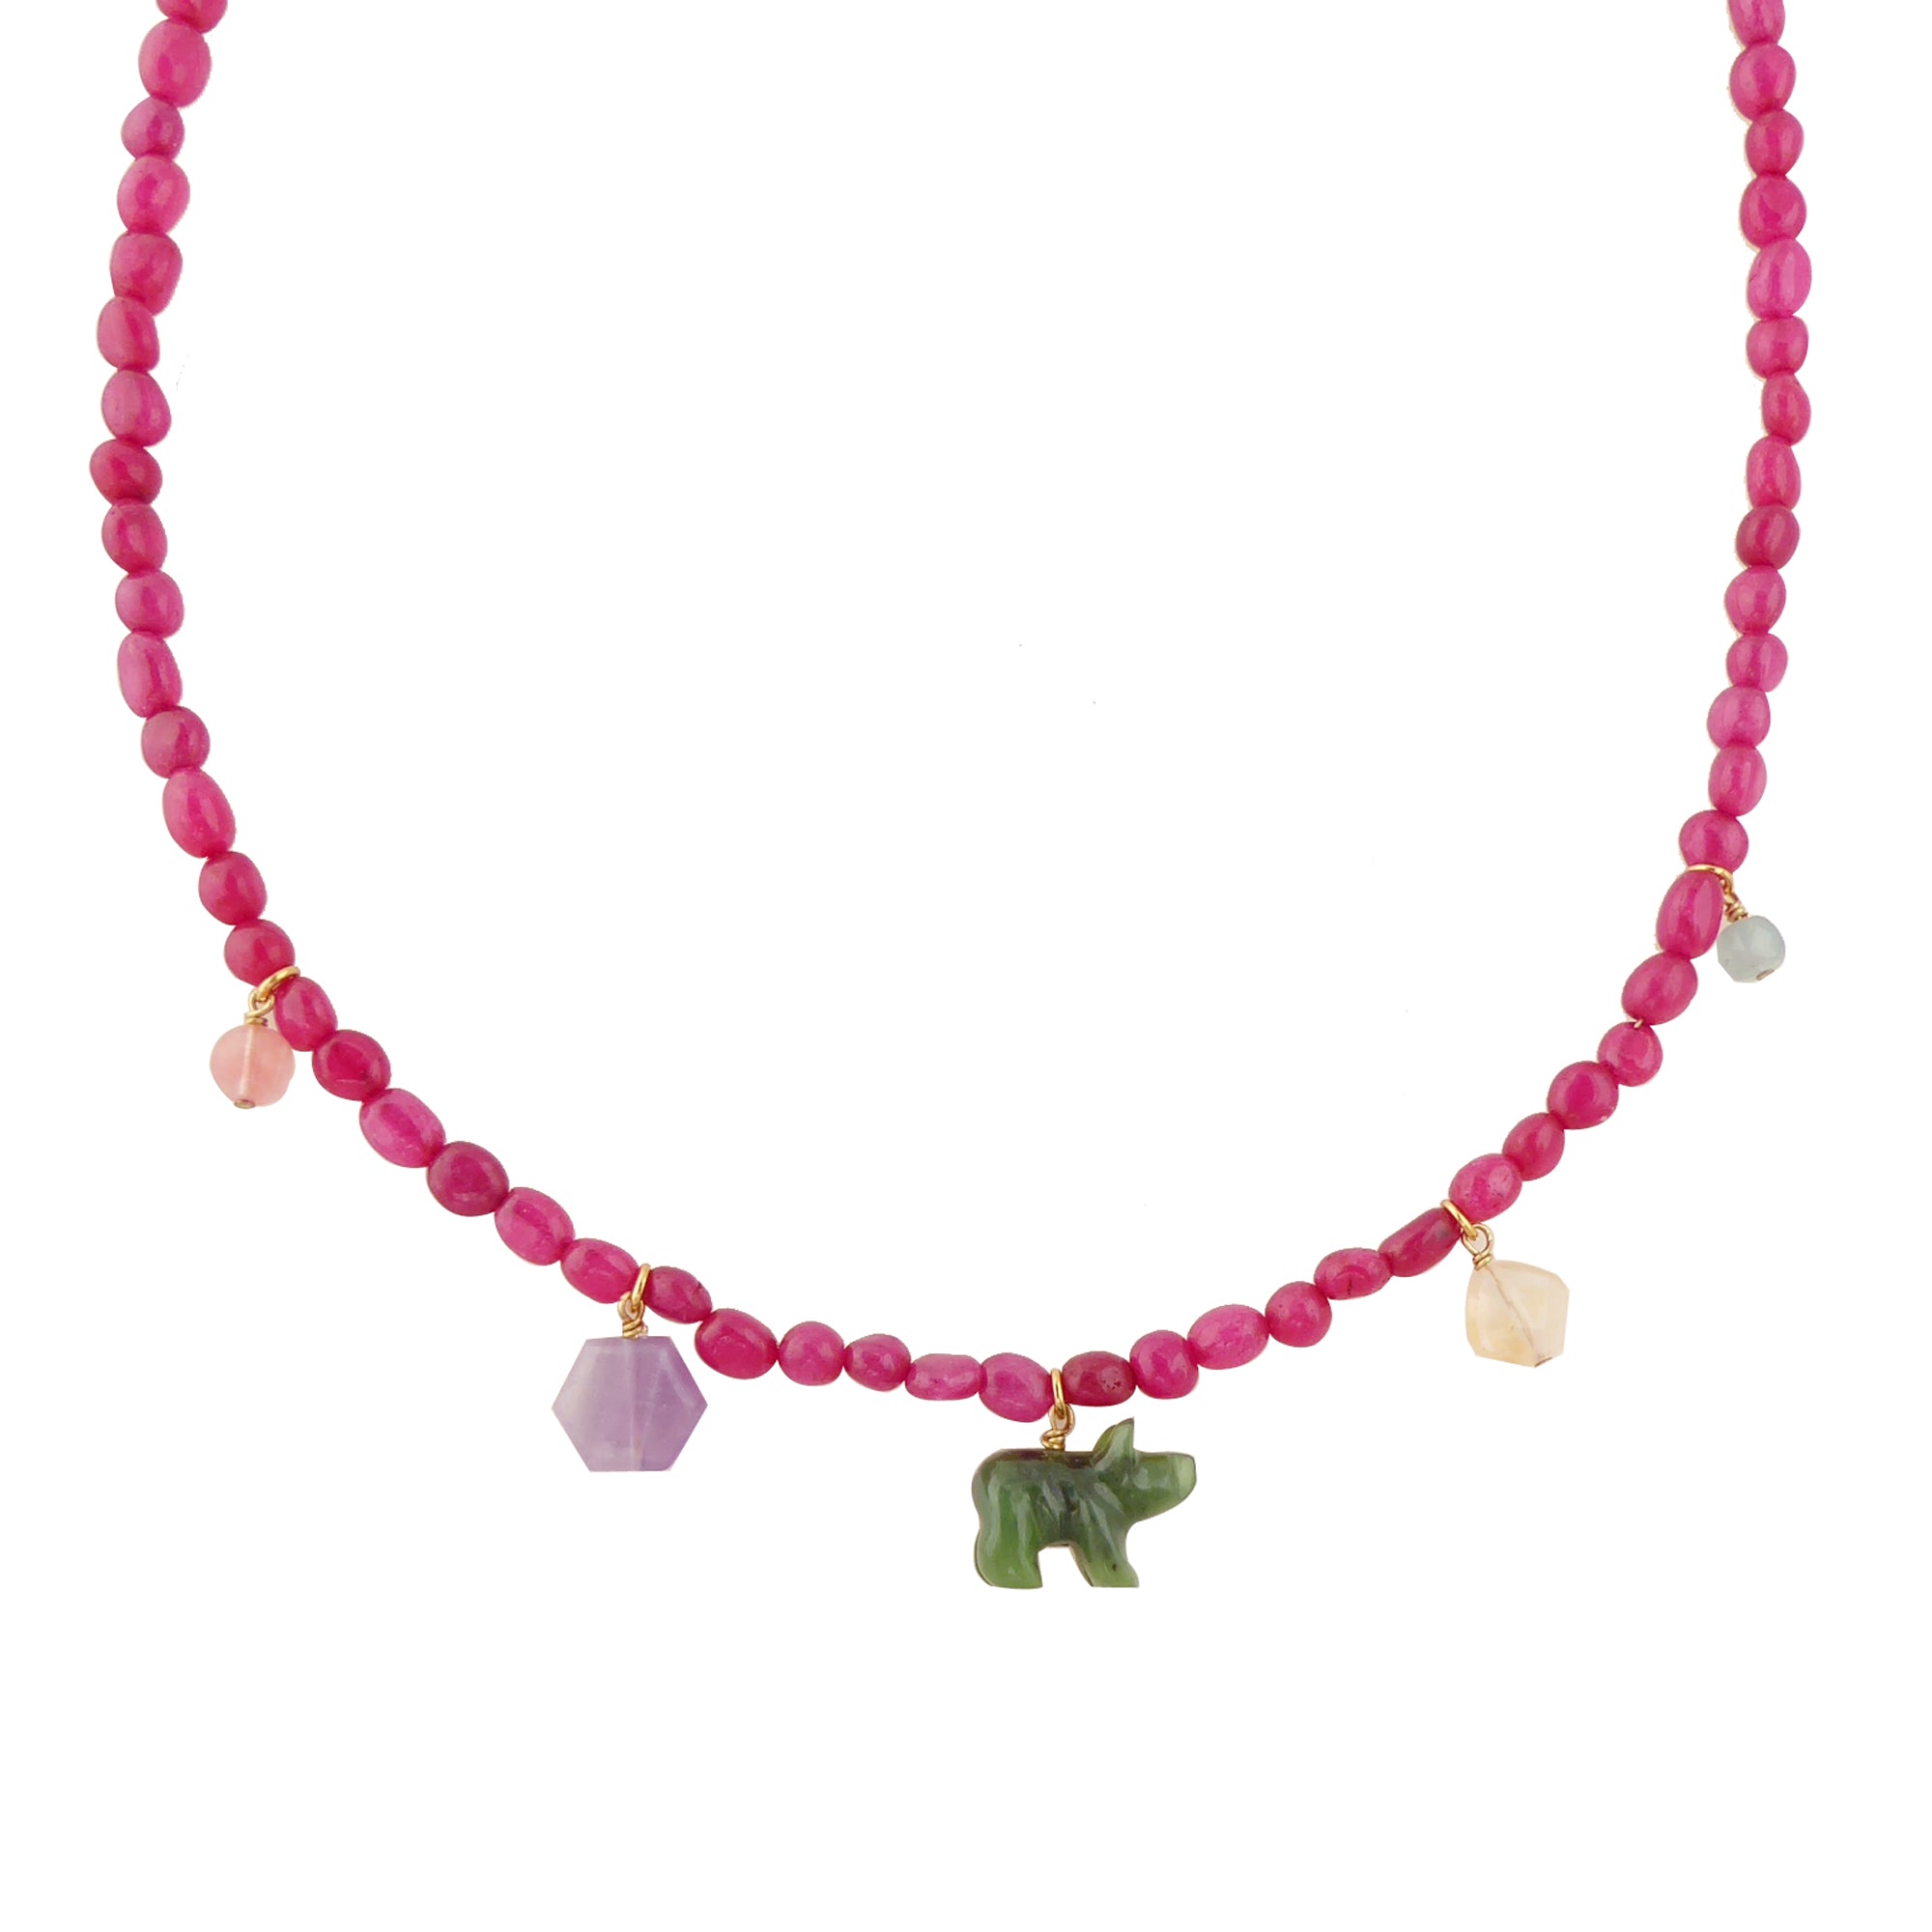 Candy stone necklace by Jenny Dayco 1